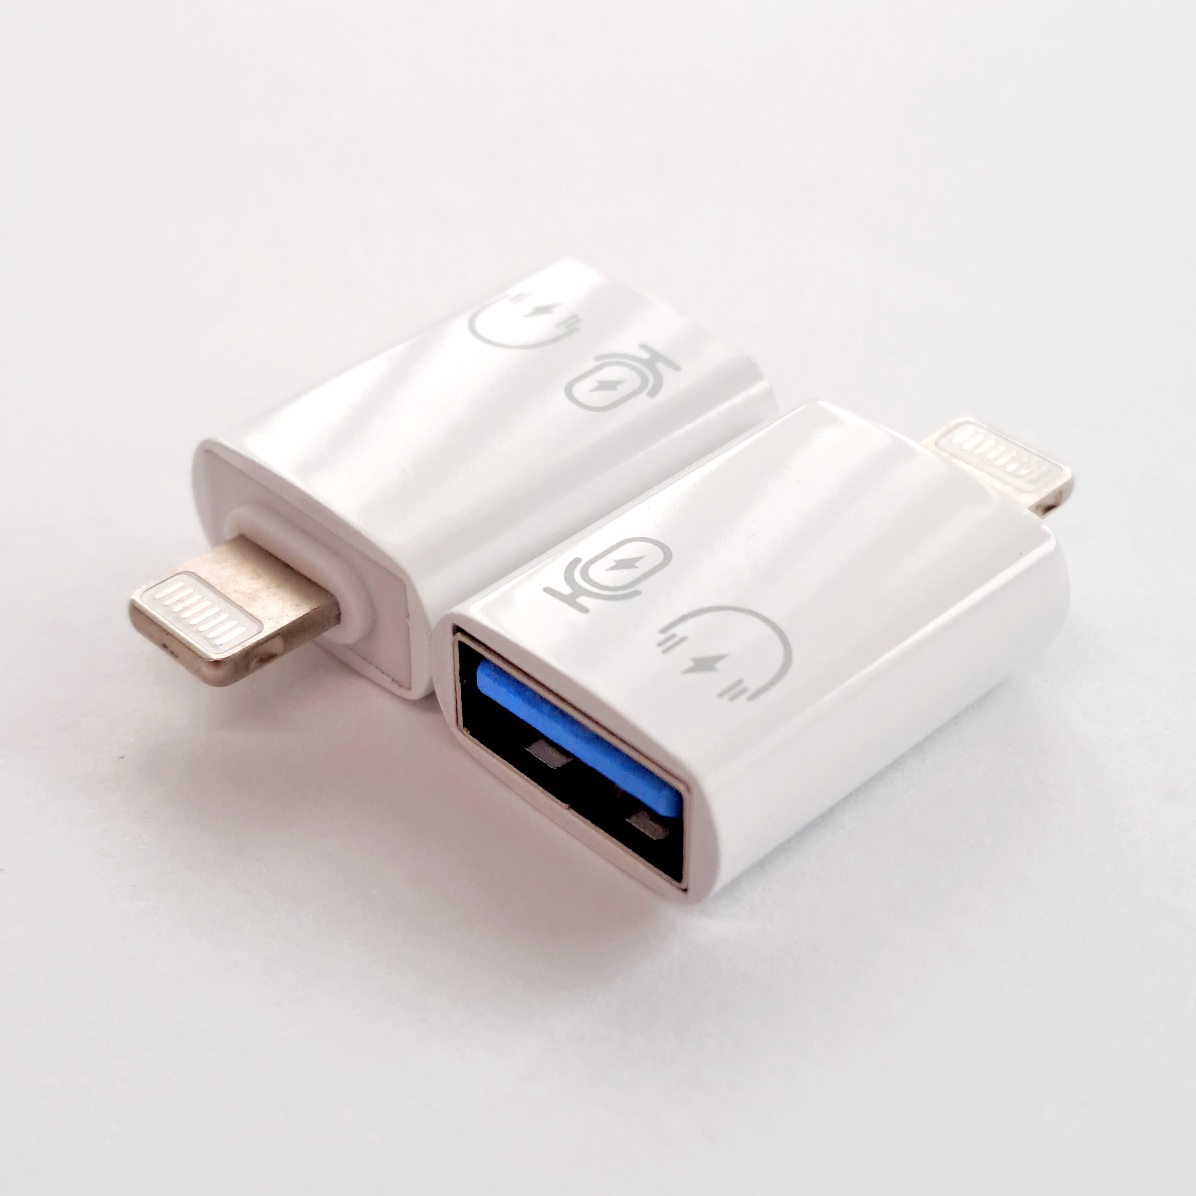 iPhone Male to USB 3.0 Female OTG Adaptor